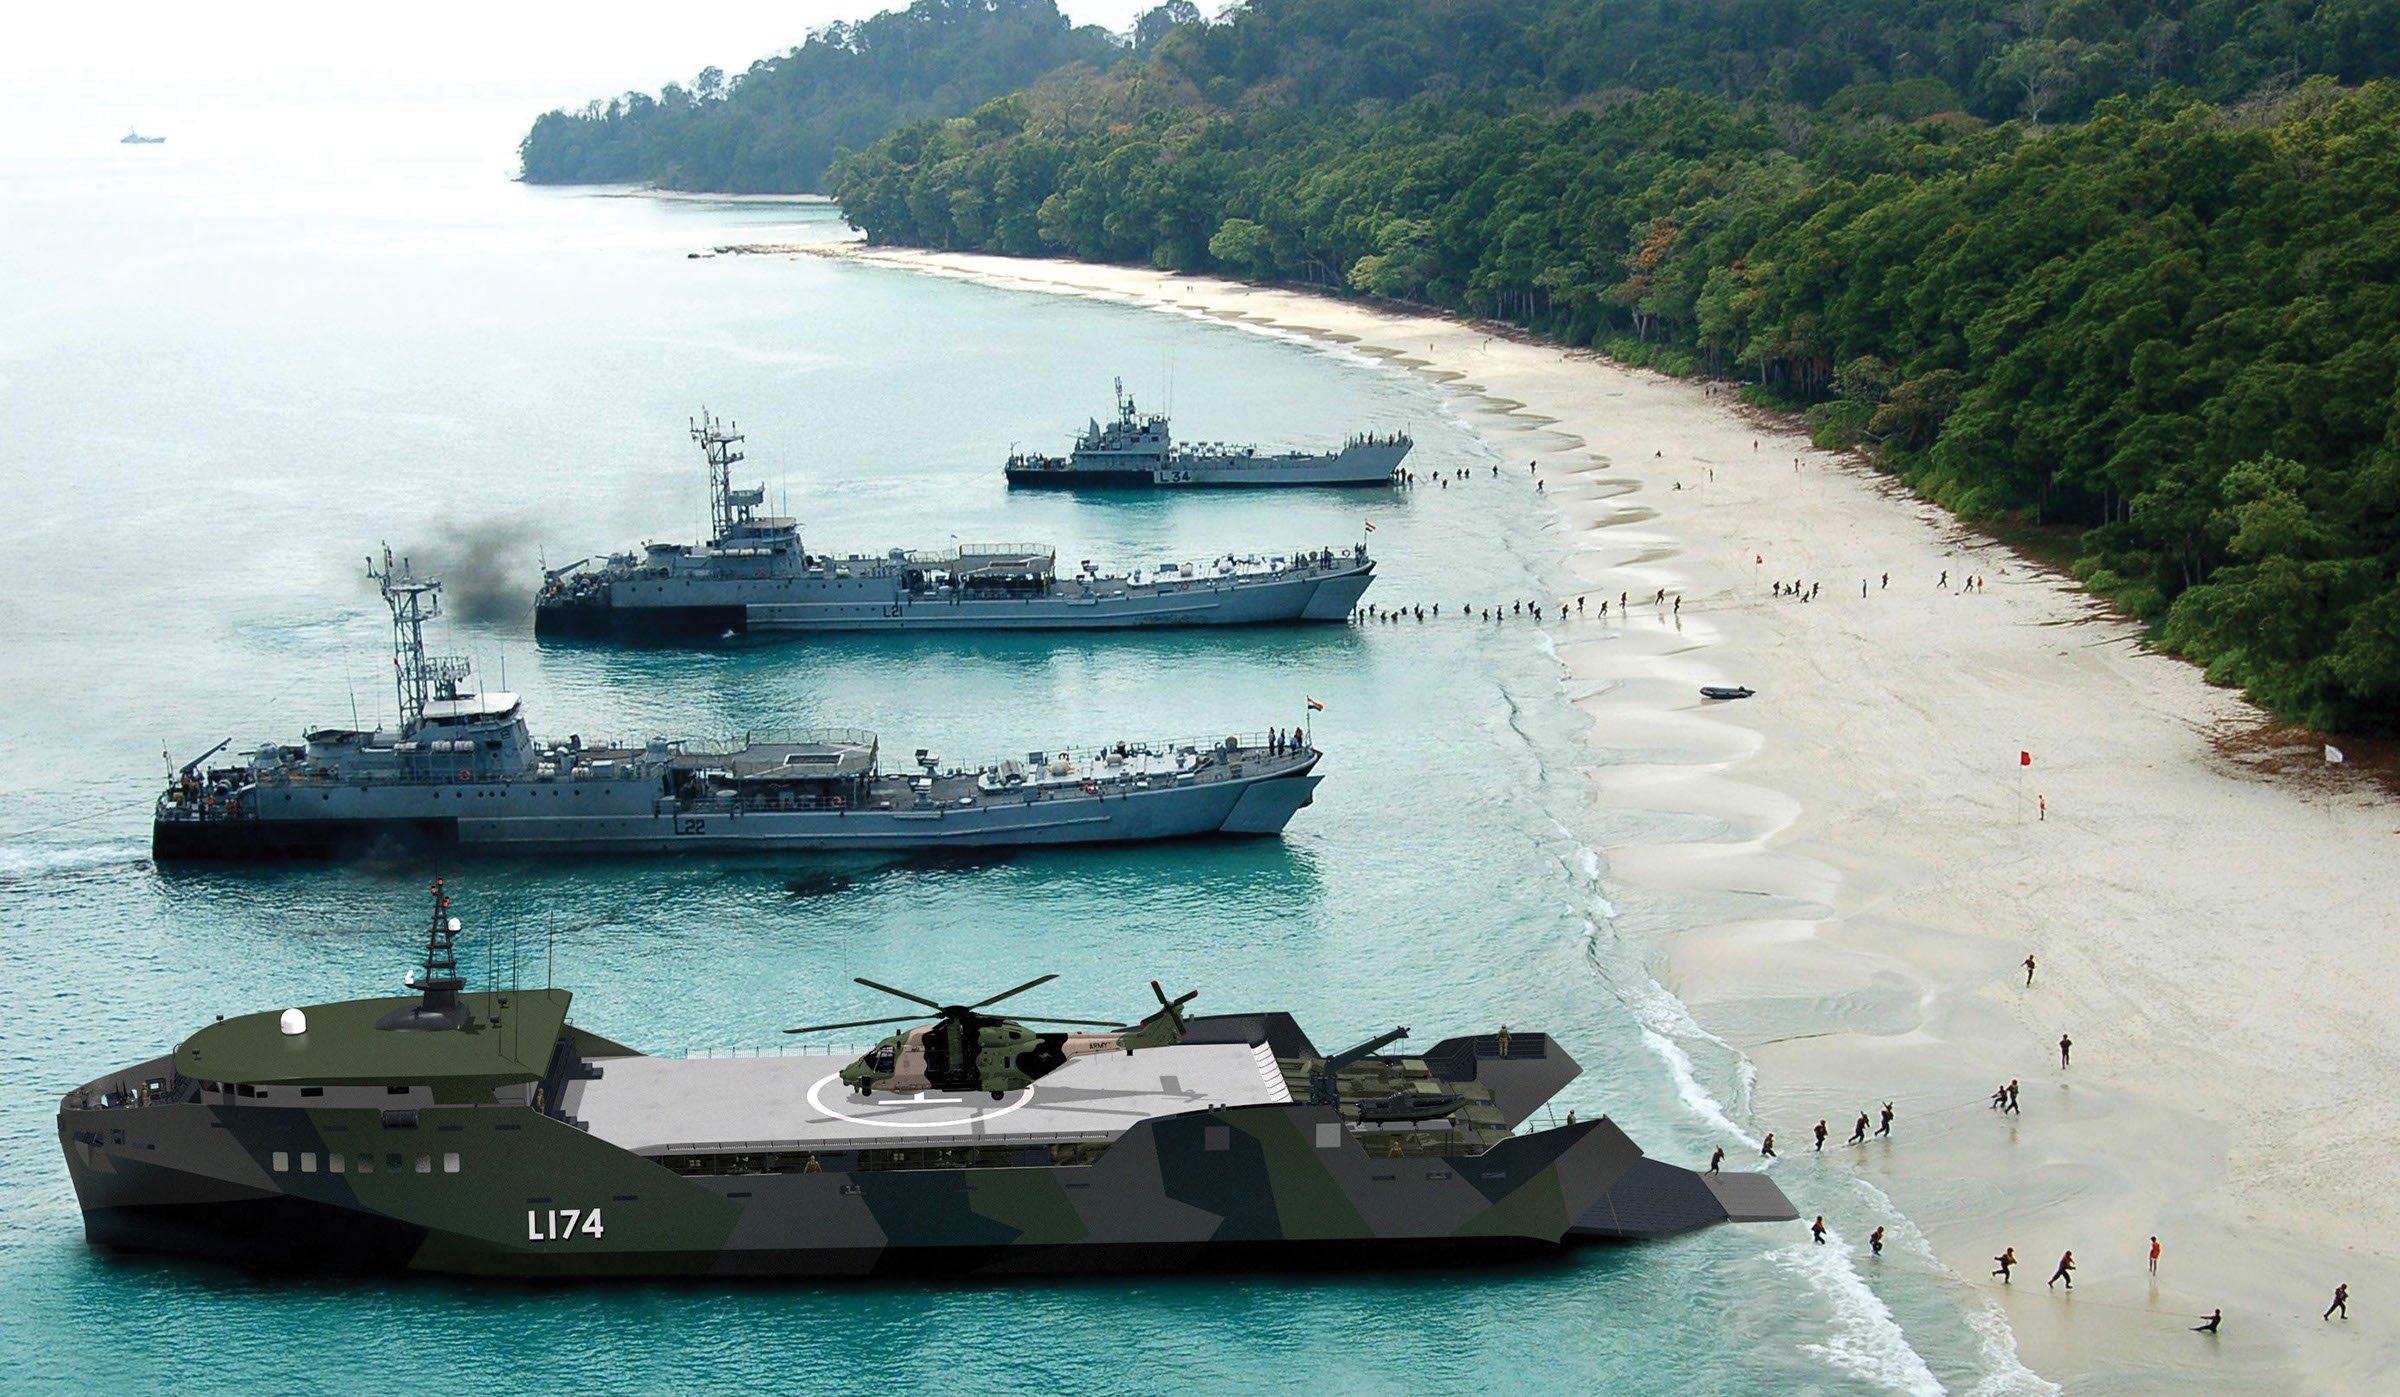 美国展示新型两栖登陆舰,要造20多艘,只需花1艘两栖攻击舰的钱